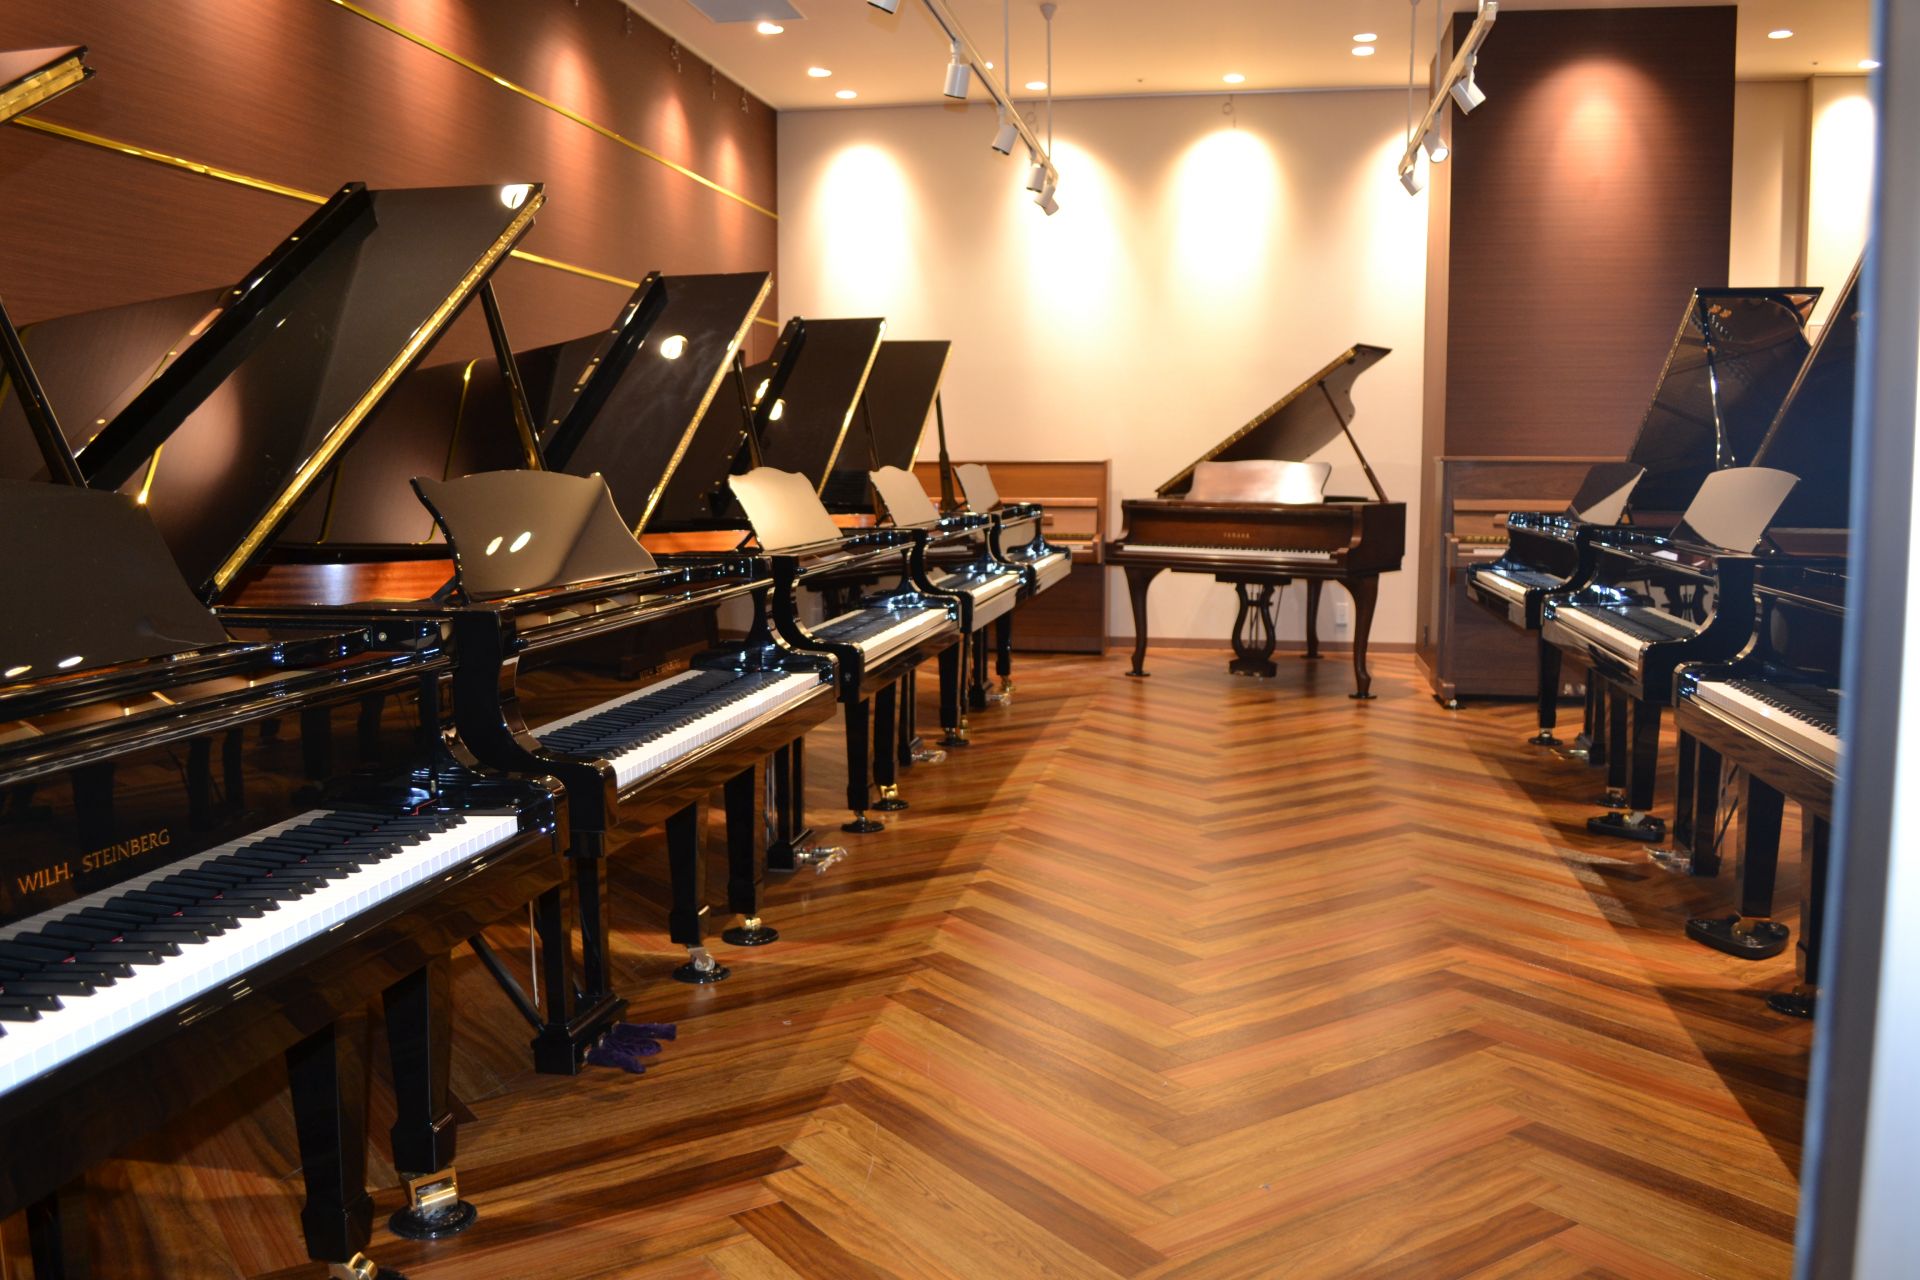 *"お客様にとって最適なピアノ"を選ぶお手伝いを致します。 [!!お客様一人ひとりに合ったピアノを選ぶお手伝いをしたい。!!]]]日本最大の楽器小売店である島村楽器は、いつもそんな想いでピアノを販売しています。電子ピアノからアップライトピアノ、グランドピアノまで70台以上の品揃えに加え、経験豊富なス […]